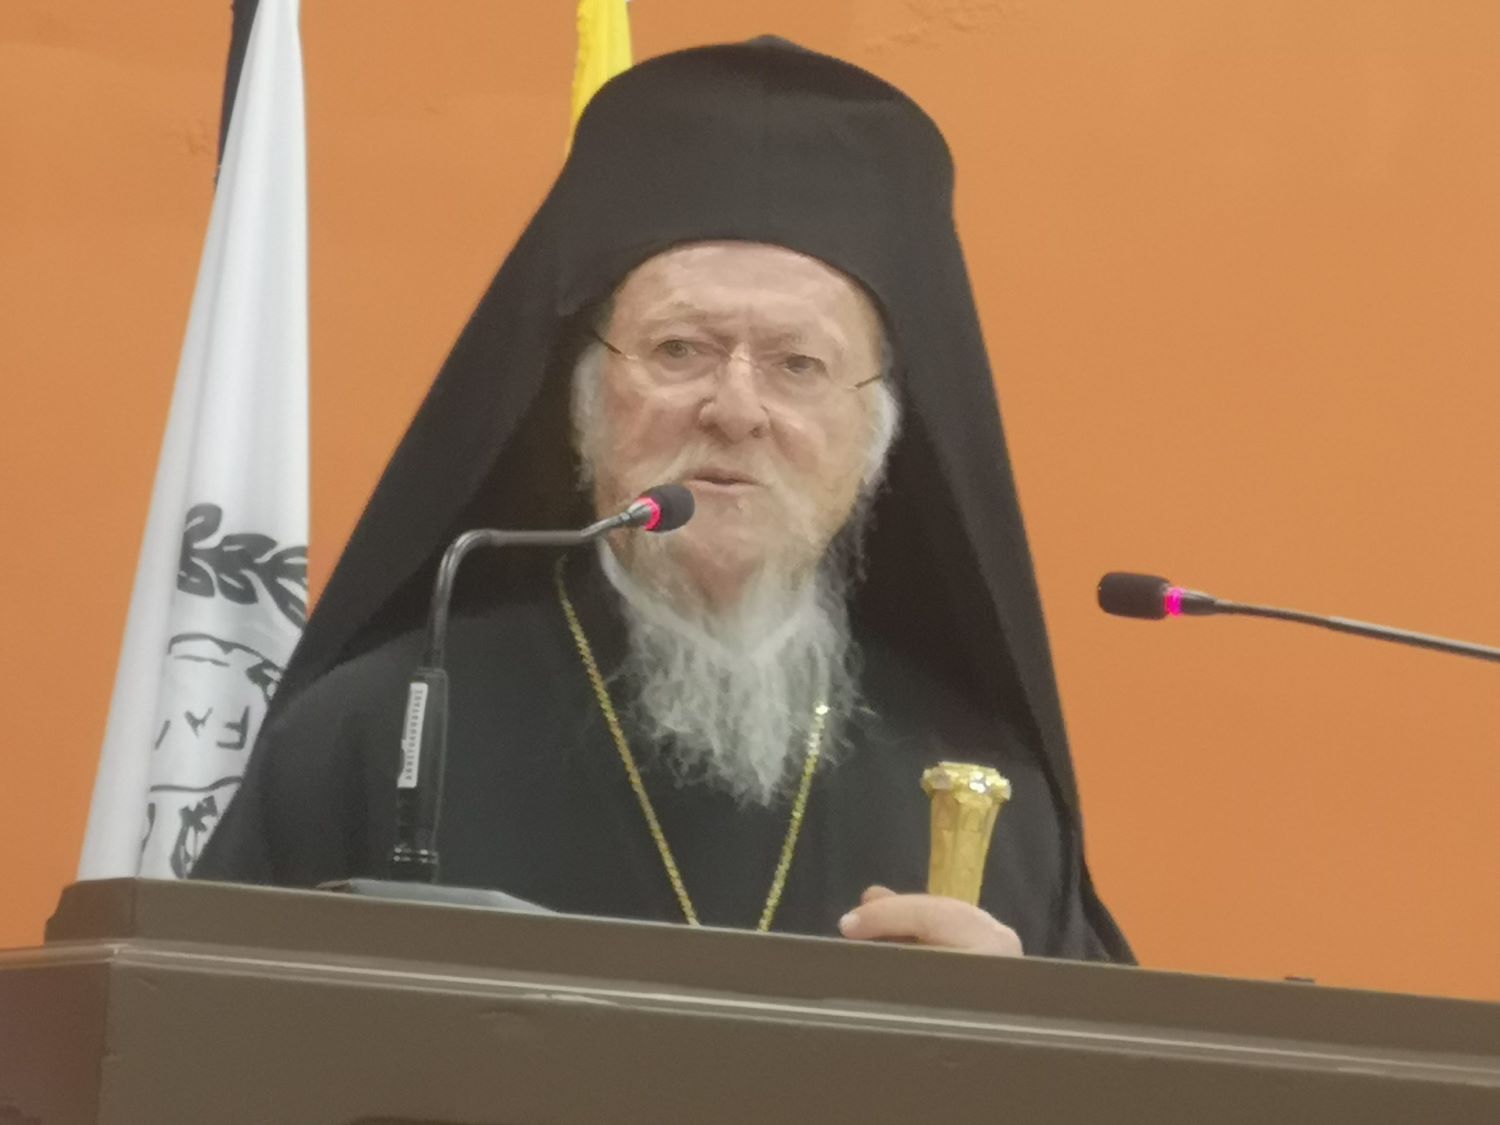 Πατριάρχης Βαρθολομαίος: Tο παγκόσμιο οικολογικό πρόβλημα έχει ανθρωπογενή αίτια